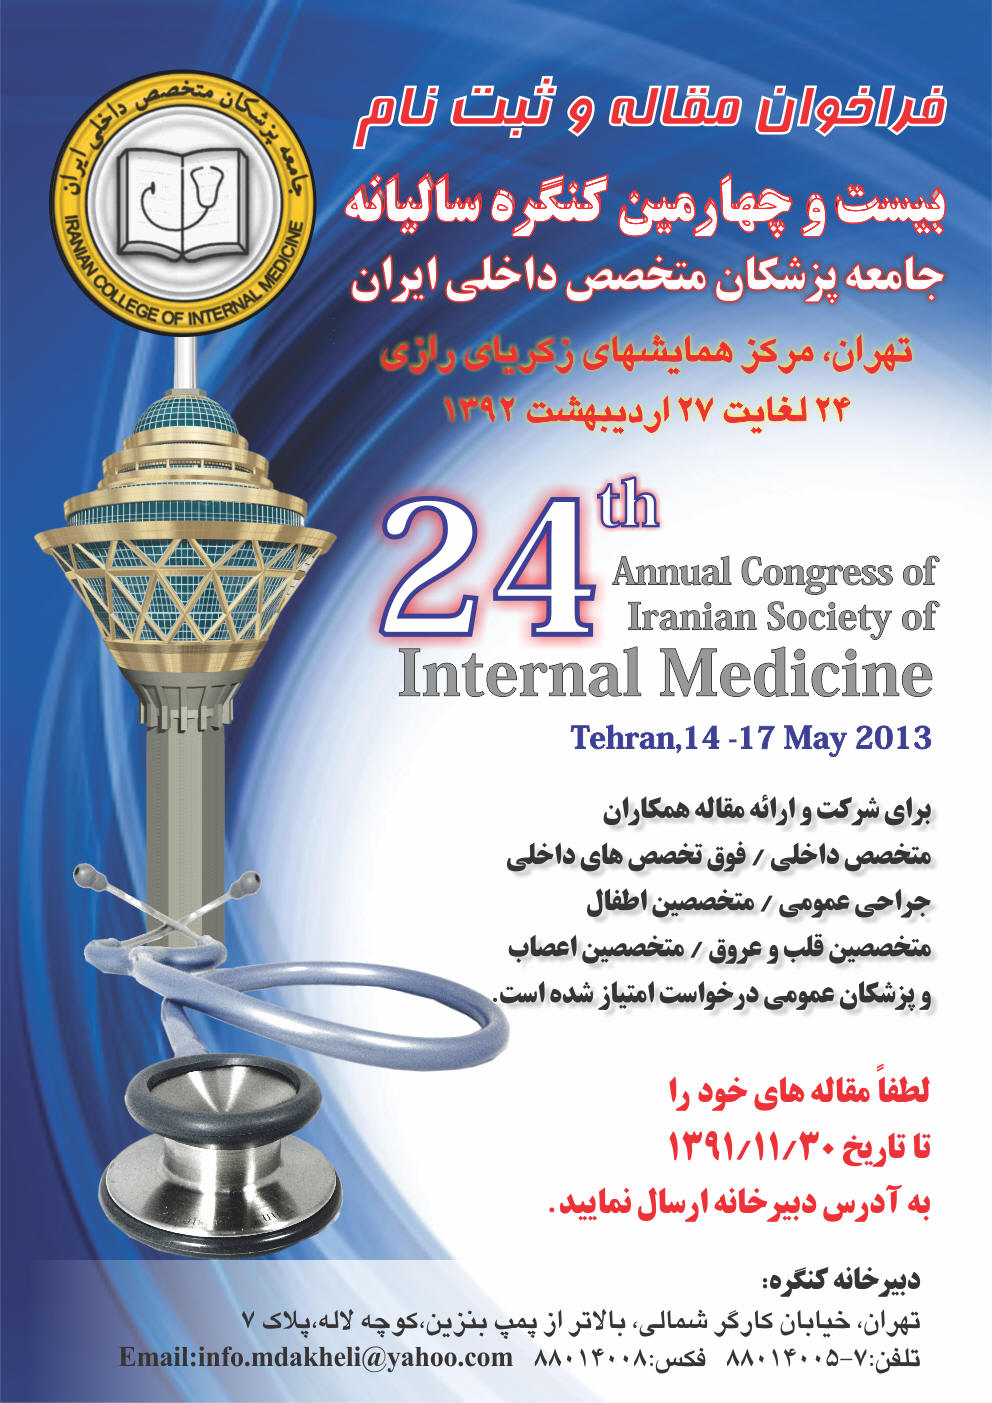 بیست و چهارمین کنگره سالیانه جامعه پزشکان متخصص داخلی ایران